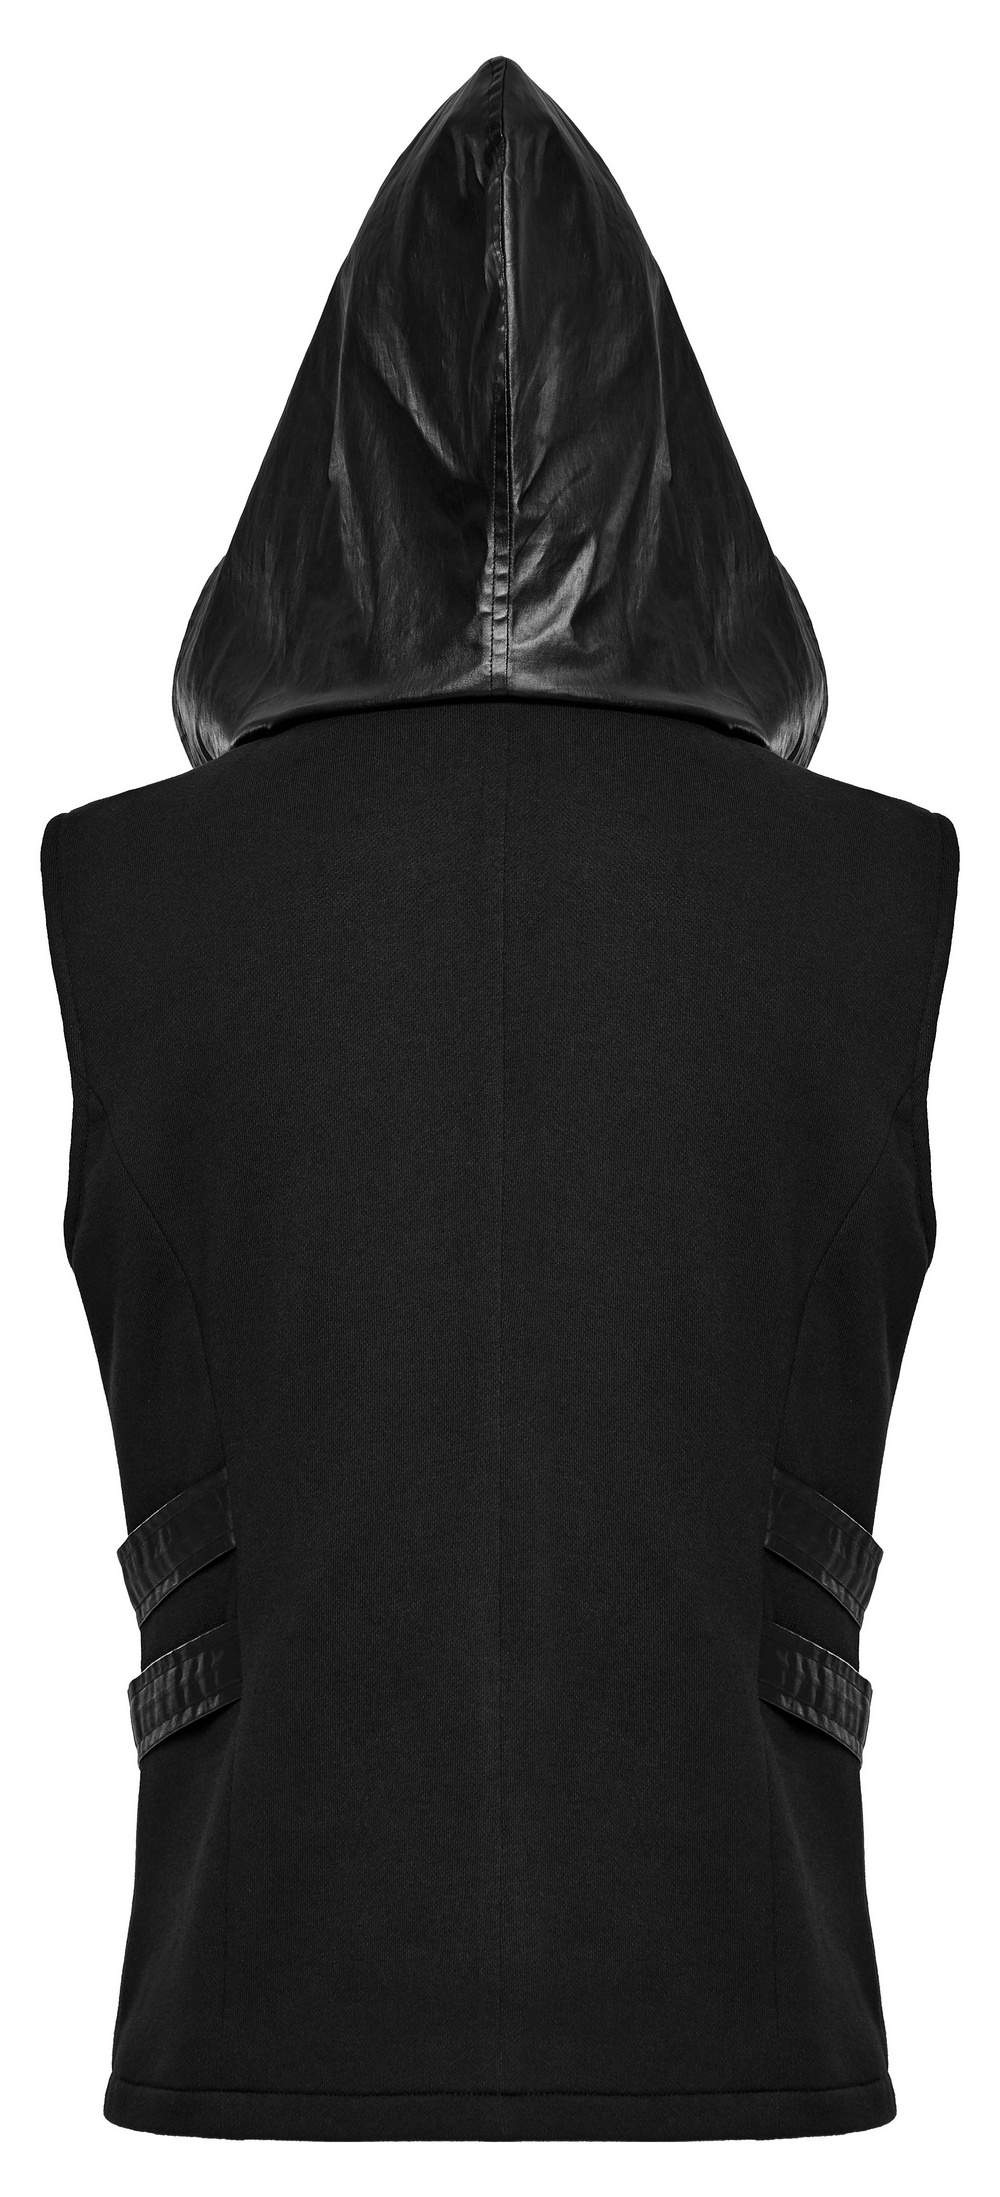 Sudadera con capucha sin mangas Techwear con detalles en cuero y cremallera